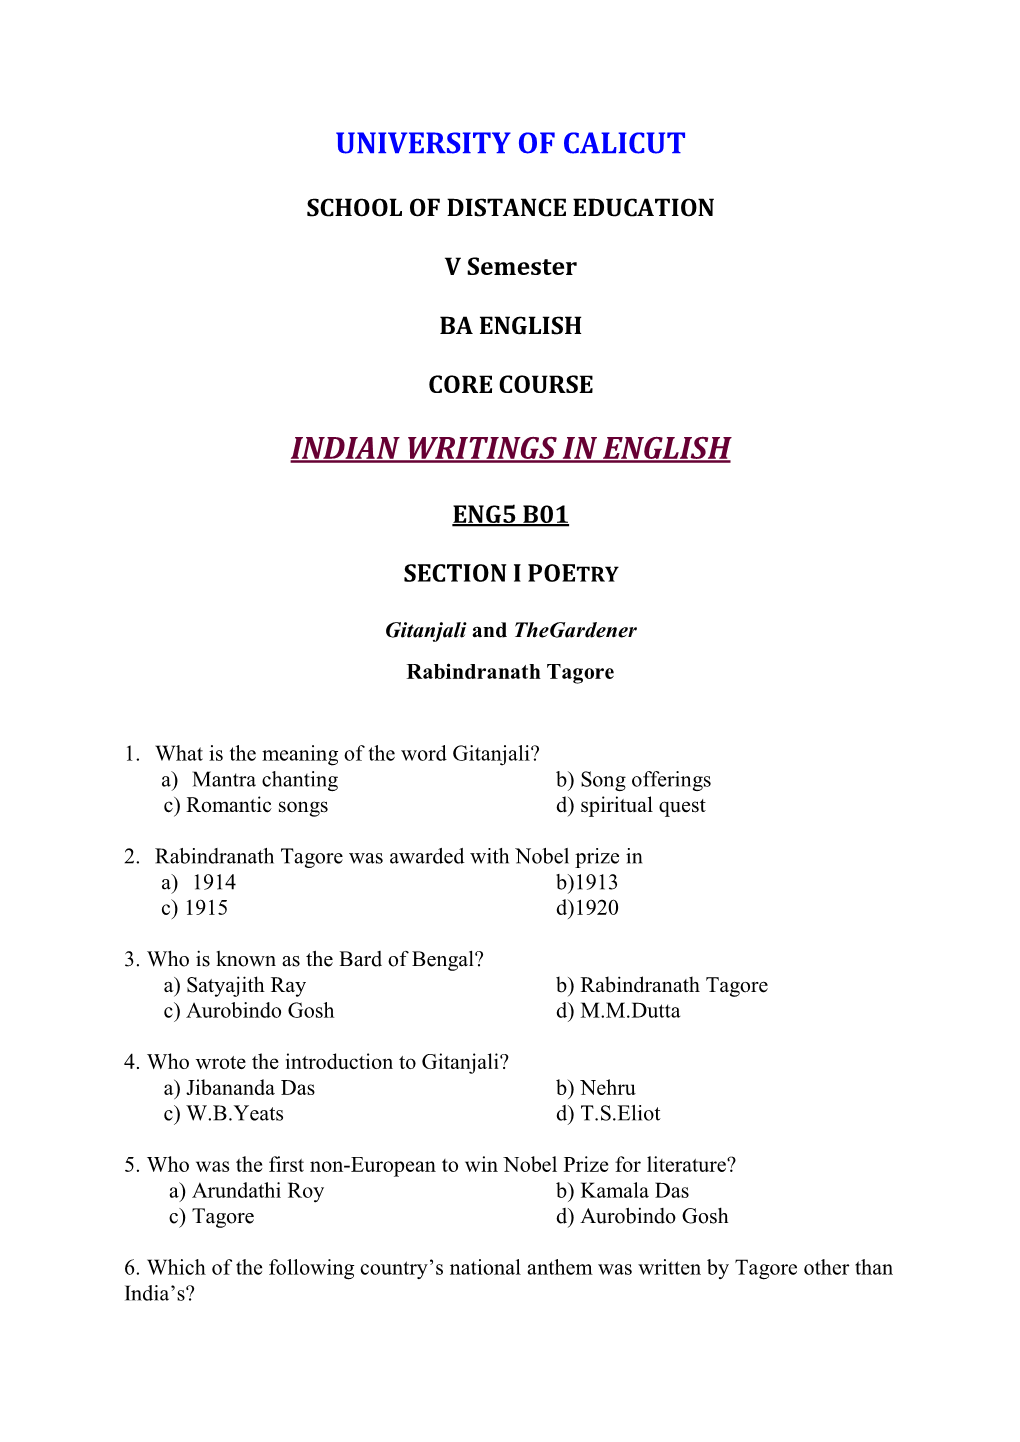 Indian Writings in English